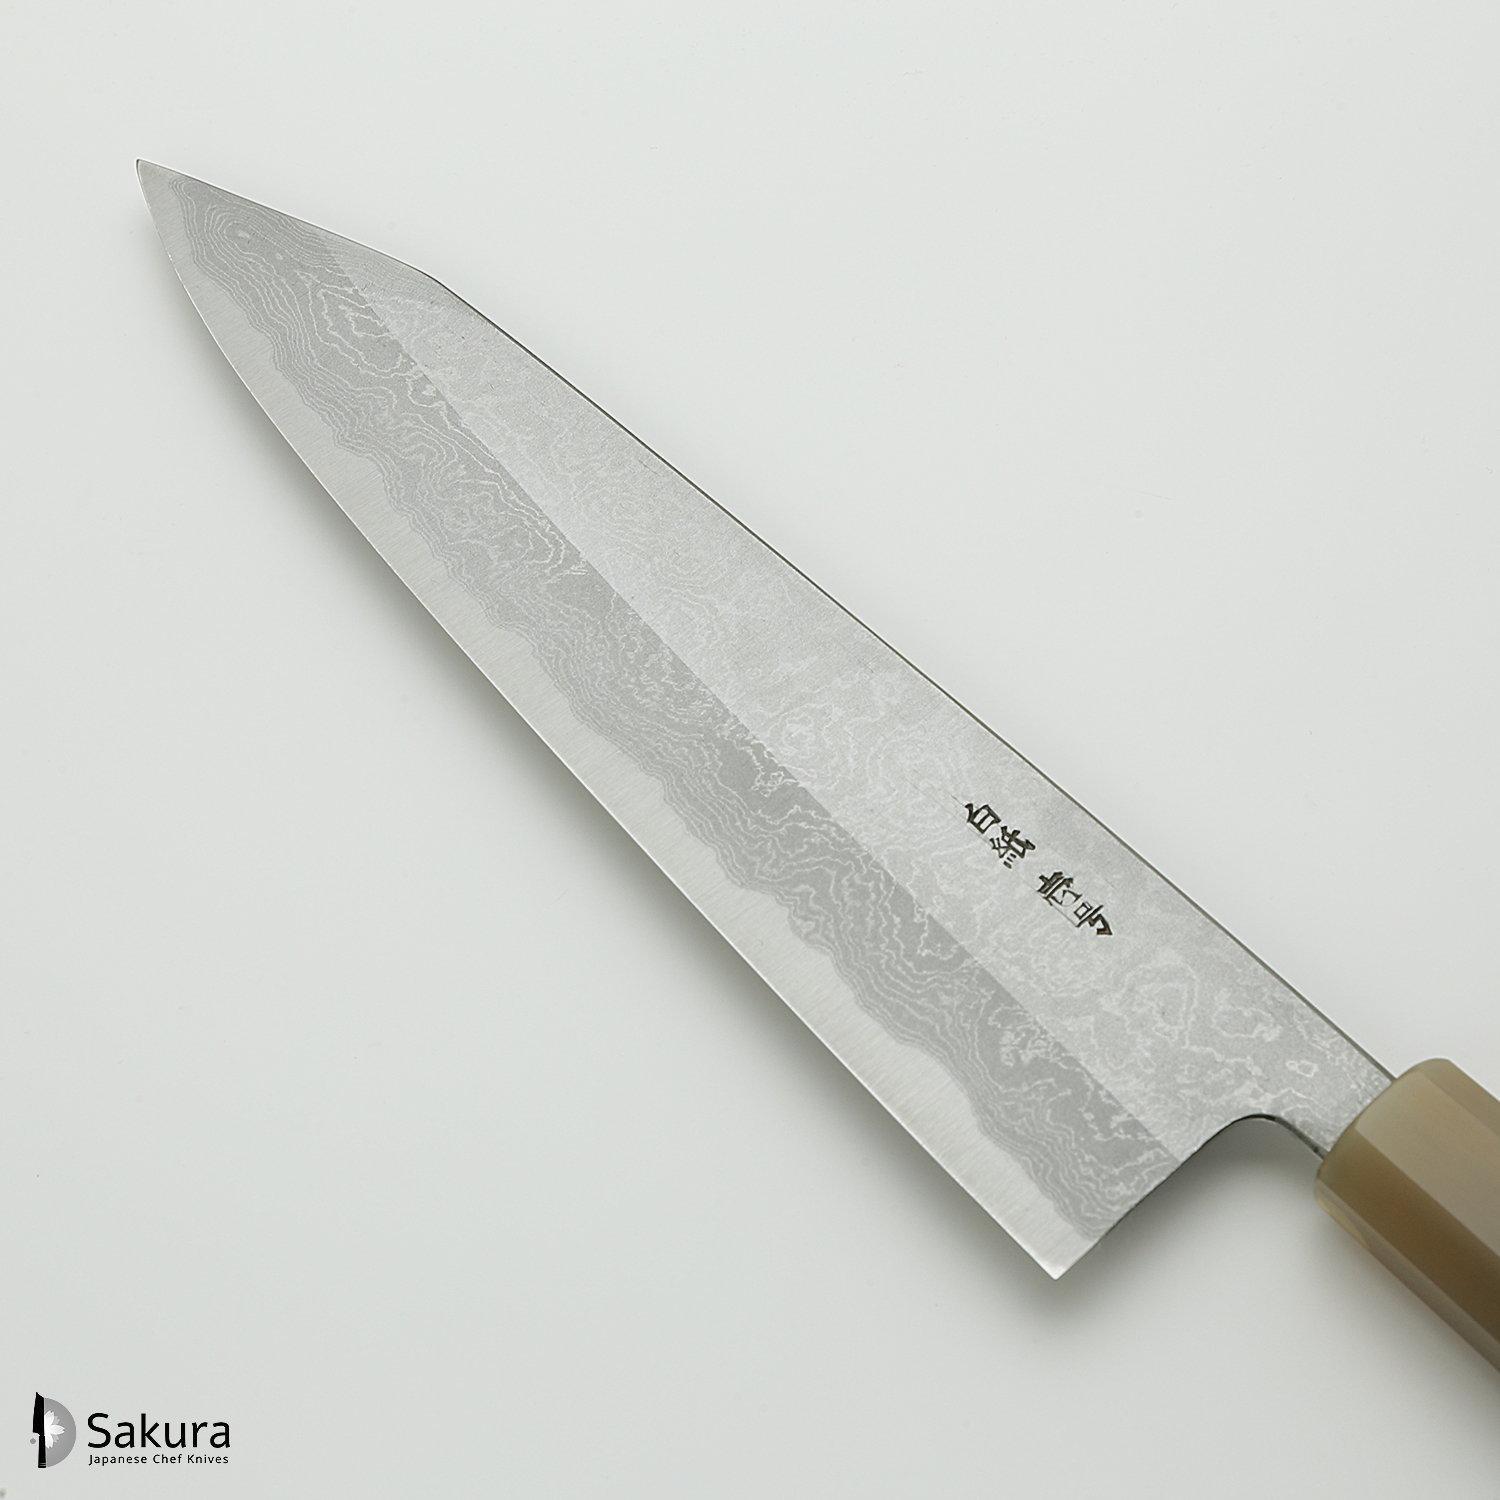 סכין שף רב-תכליתית קִּירִיצוּקֶה גִּיוּטוֹ 240מ״מ מחושלת בעבודת יד 3 שכבות: פלדת פחמן יפנית מתקדמת מסוג Shirogami #1 עטופה פלדת דמשק אל-חלד גימור דמשק יושיקאזו טאנקה יפן